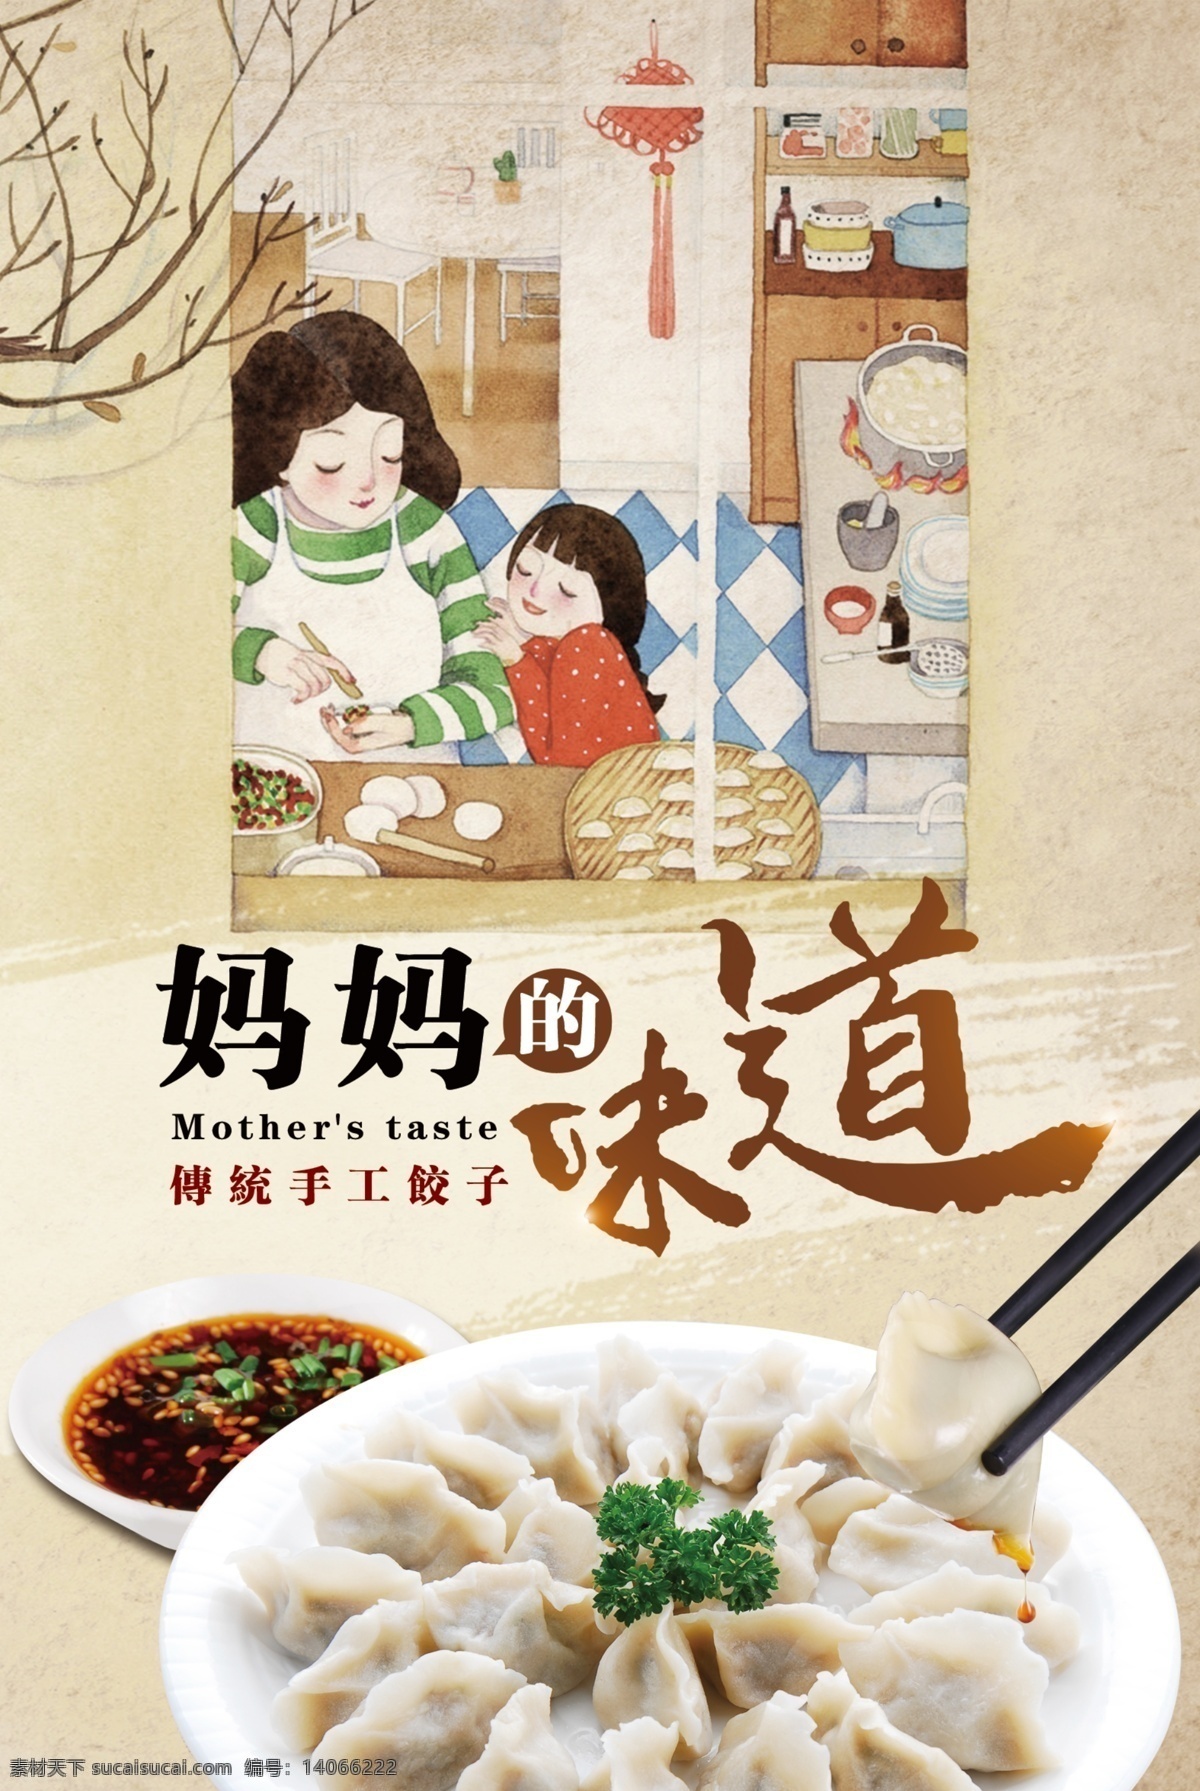 美食饺子海报 好吃不过饺子 美食 饺子 水饺 蒸饺 中国美食 手工饺子